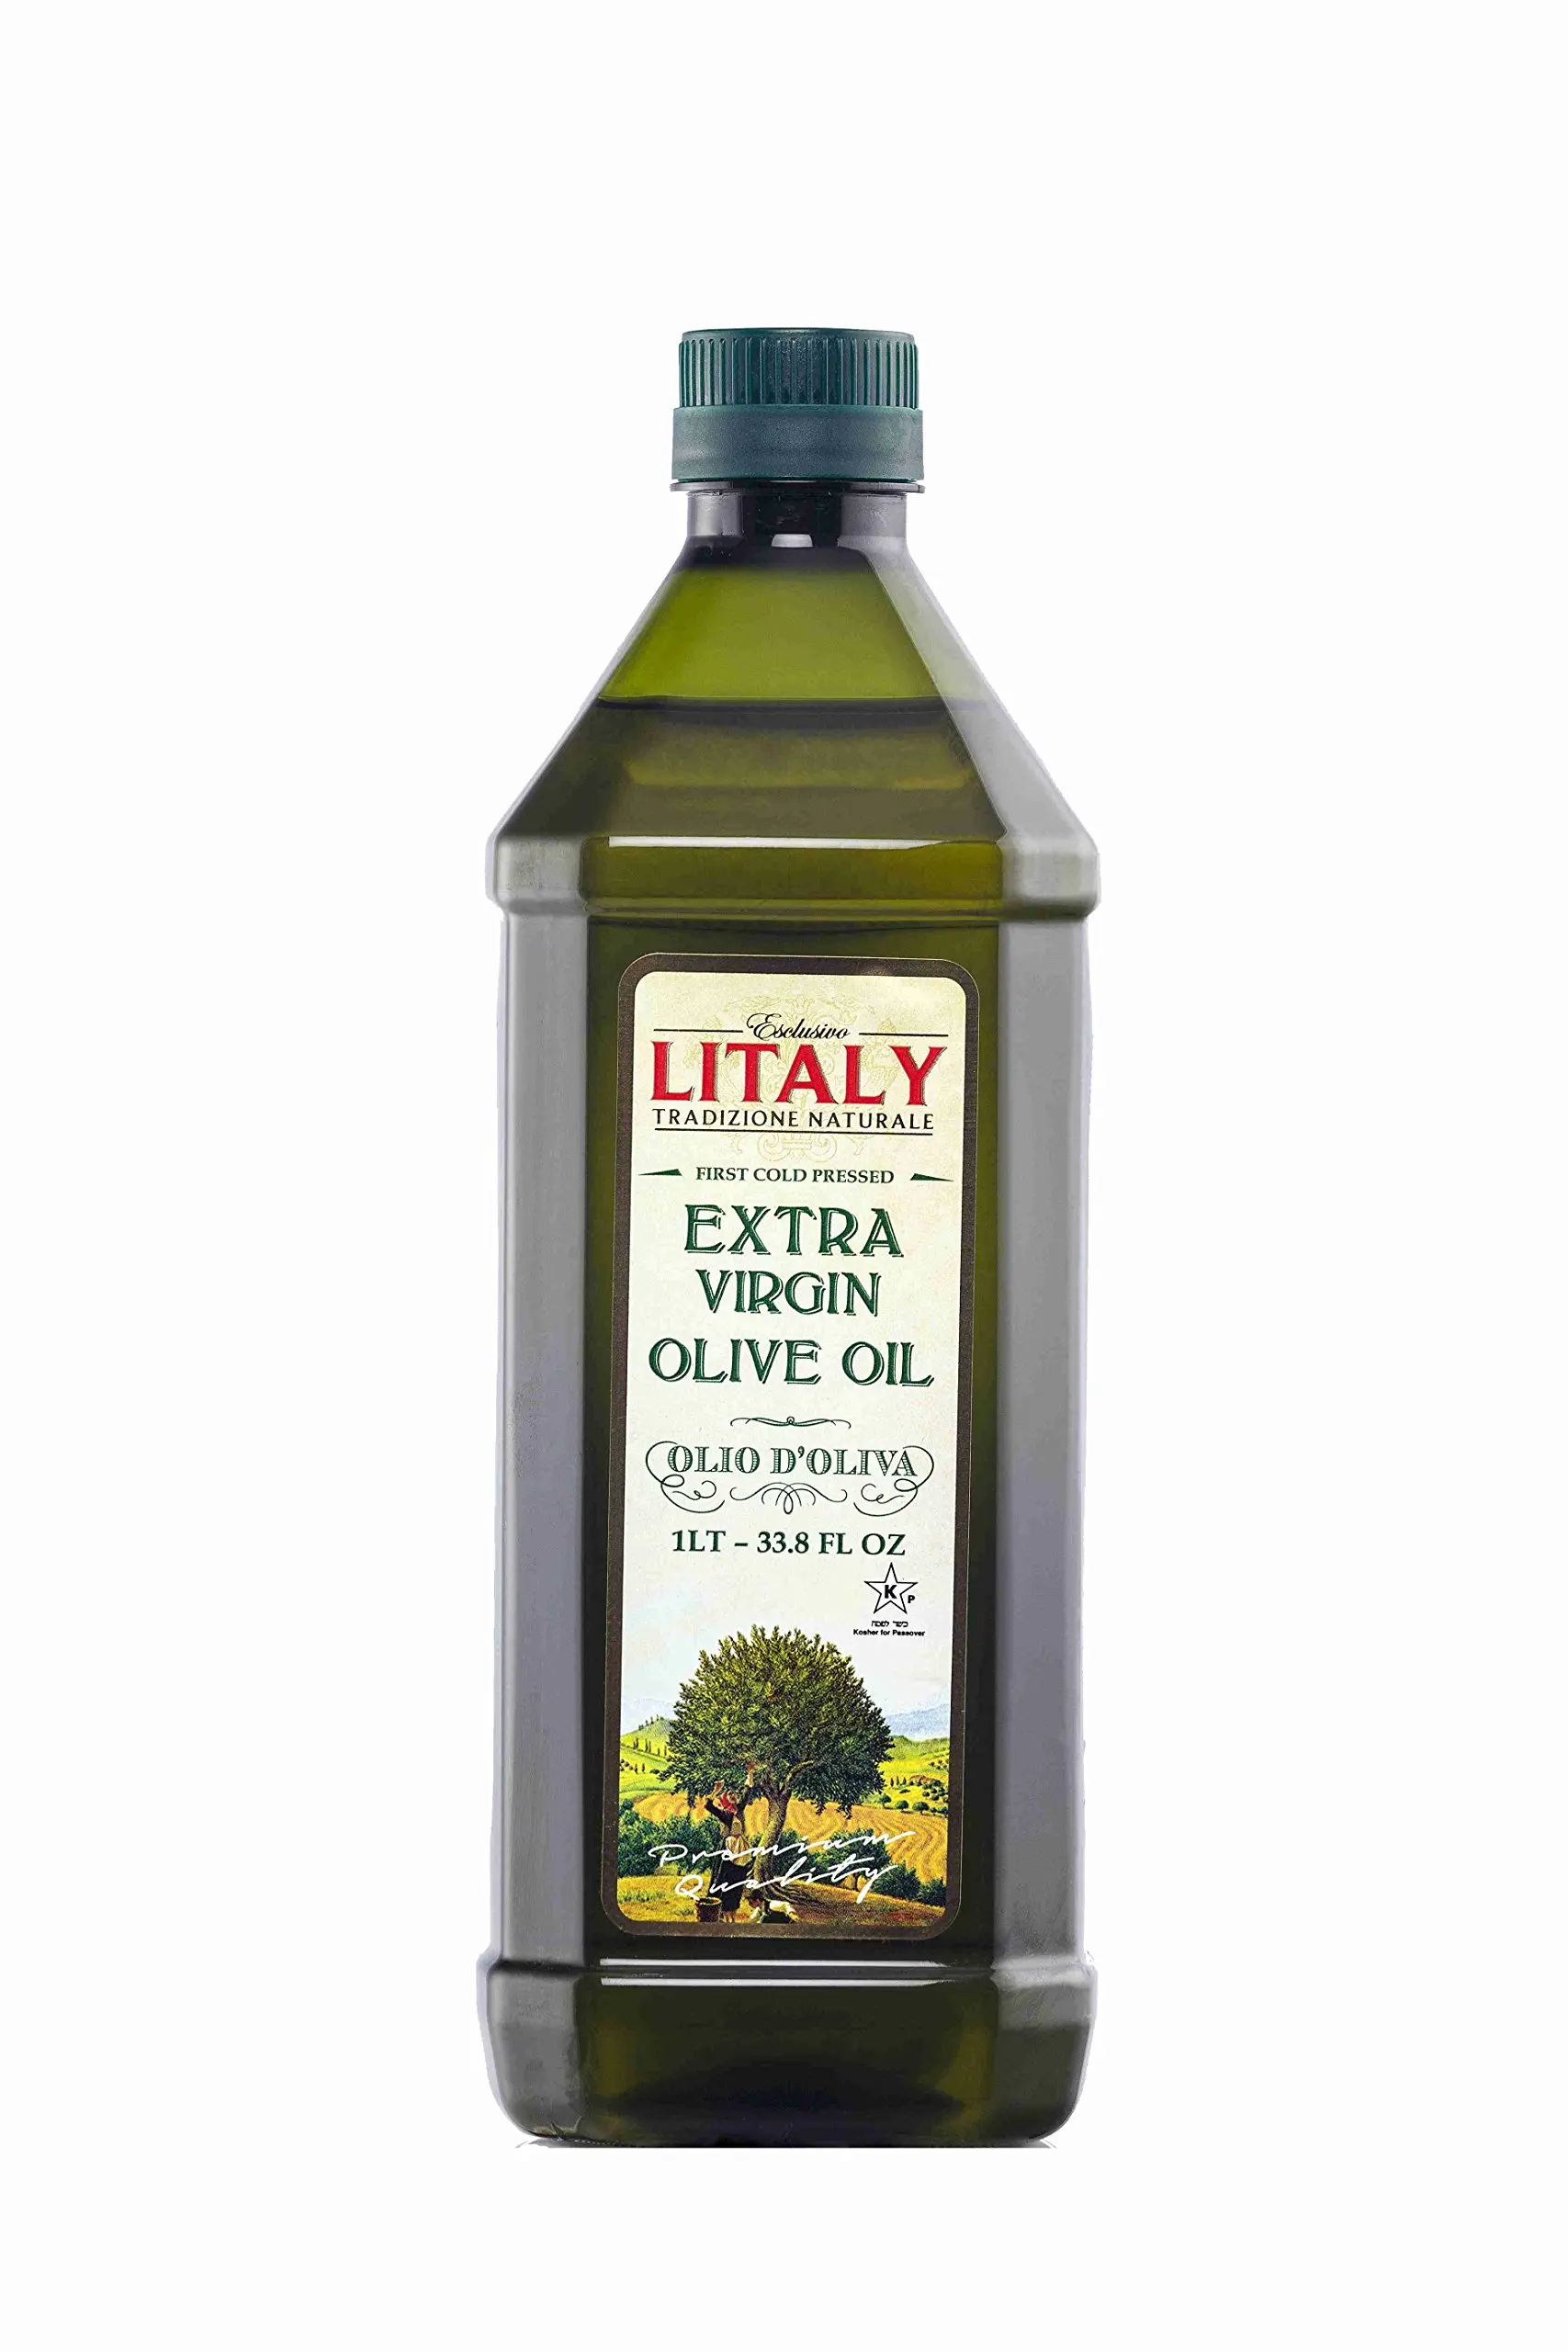 aceite de oliva en plastico - Dónde se conserva el aceite de oliva